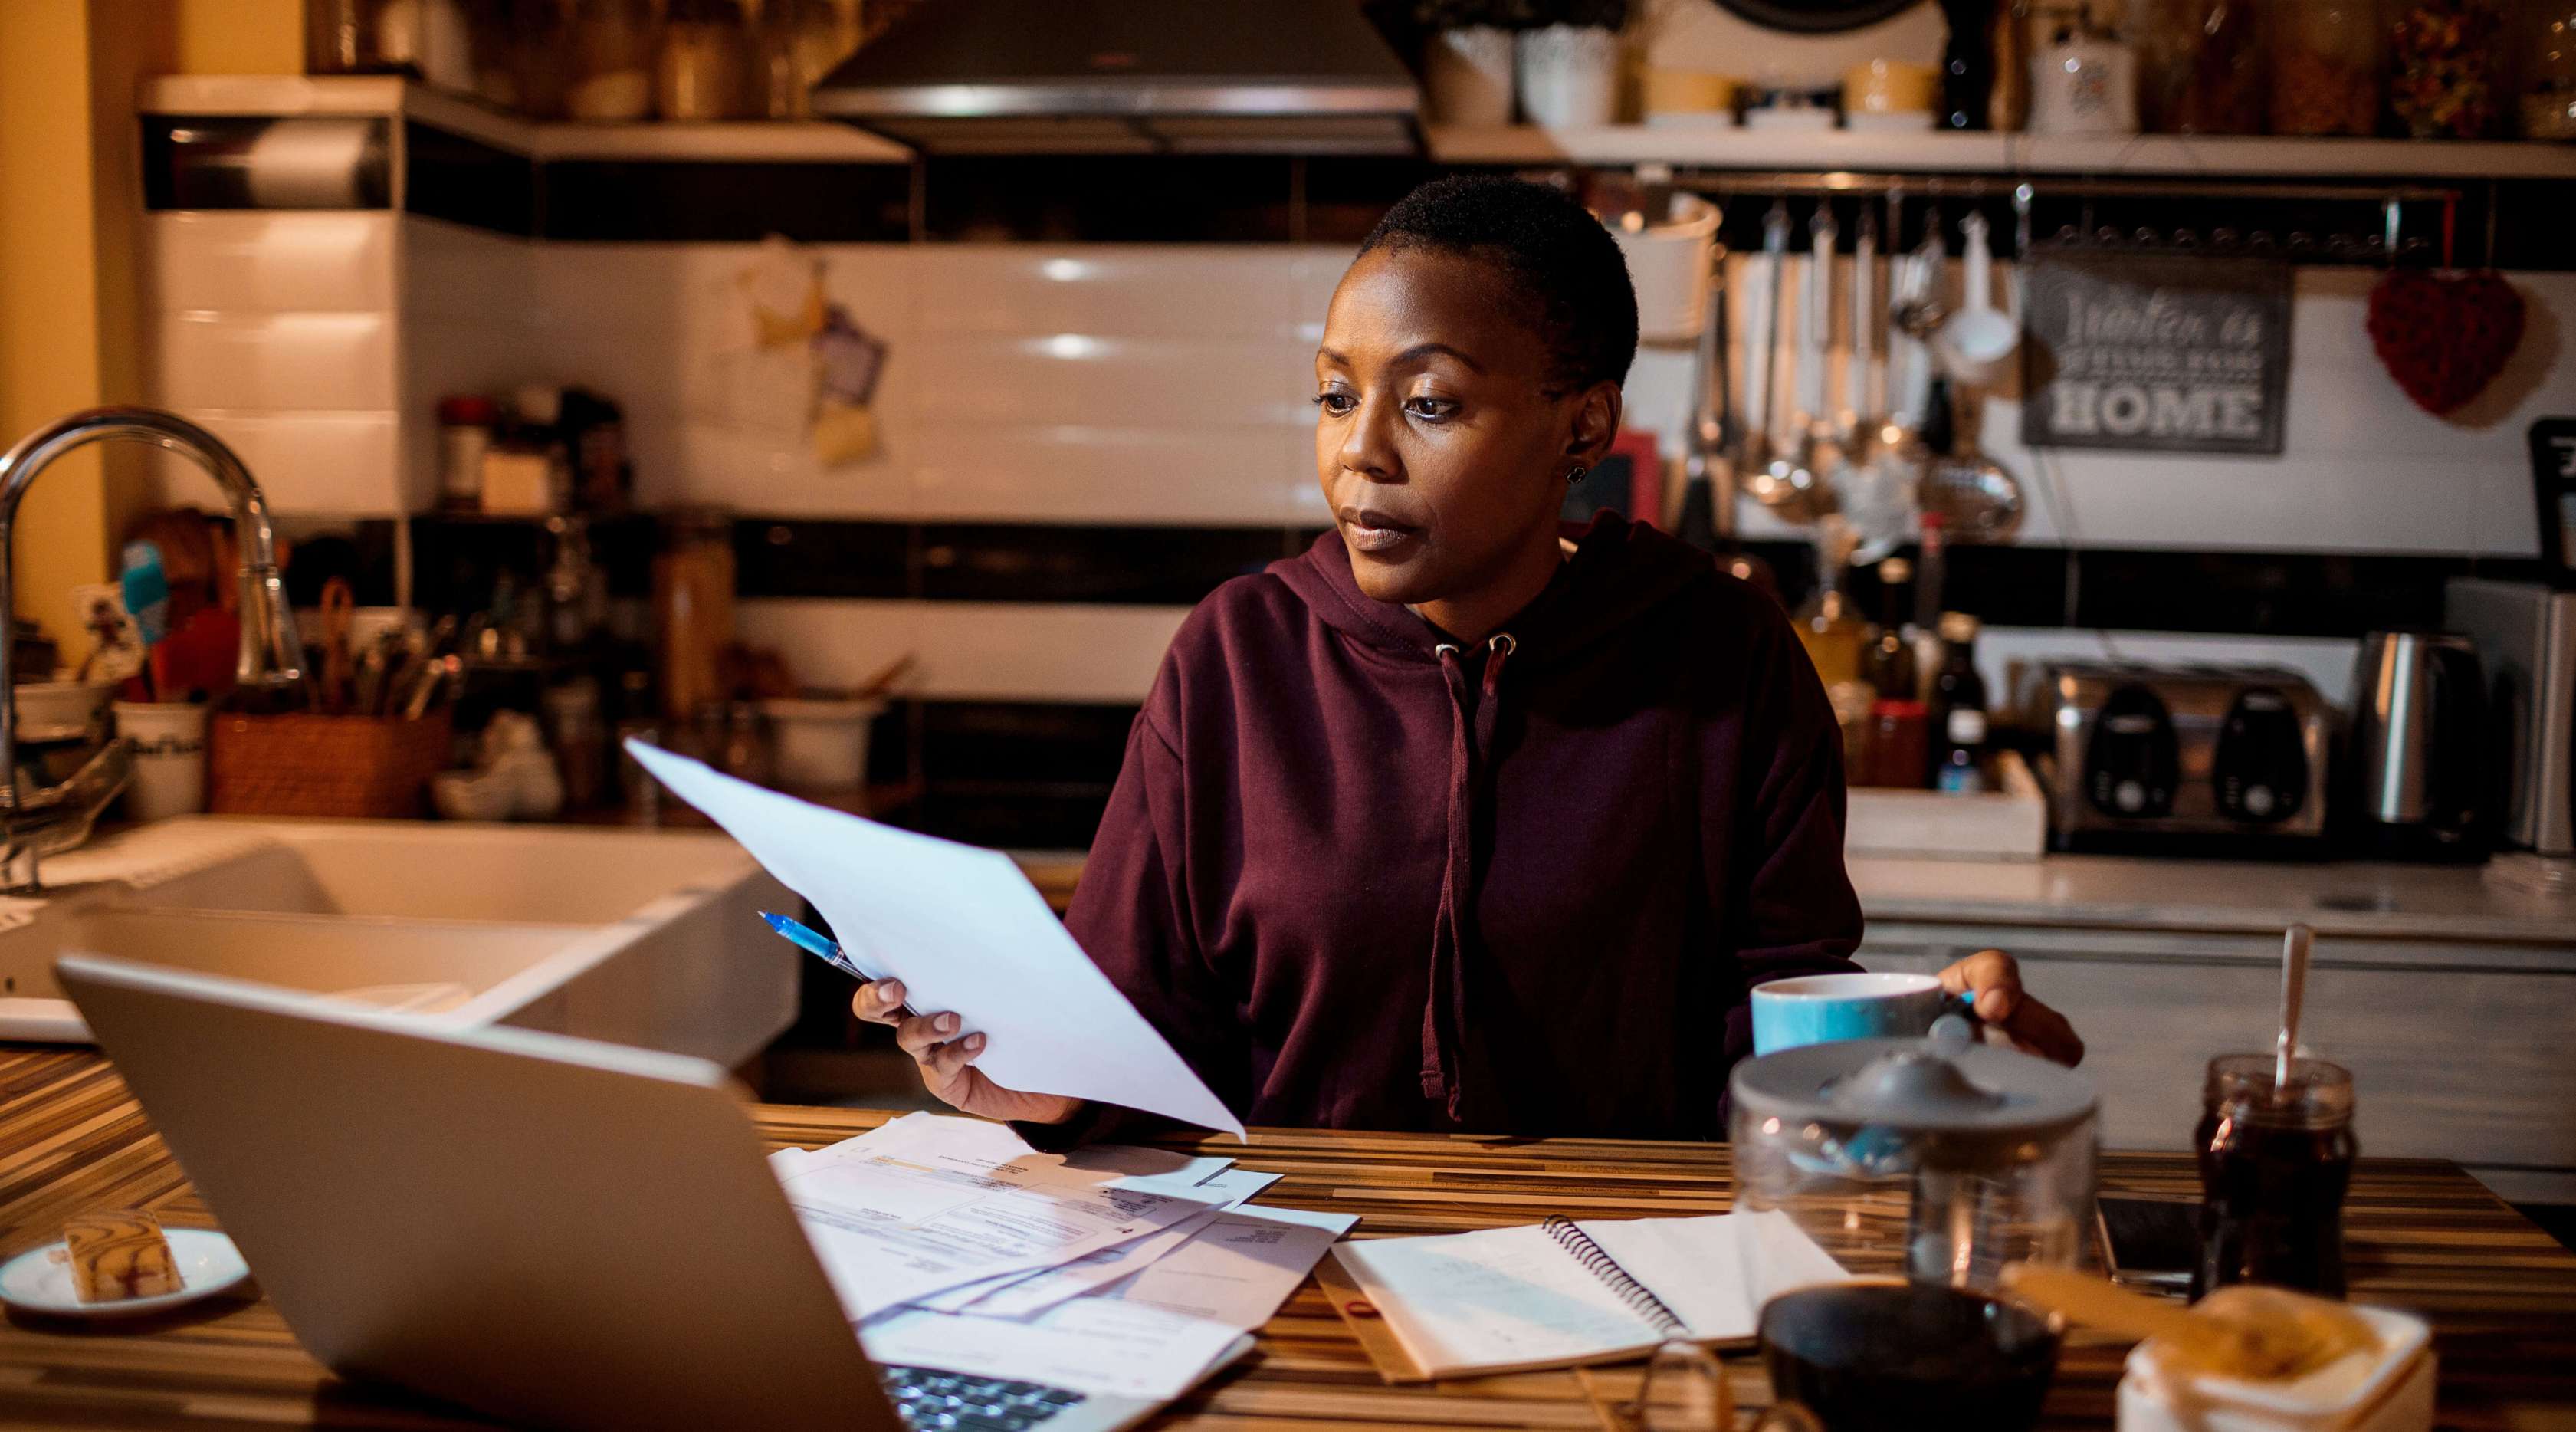 Eine Frau mit einem burgundroten Hoodie bekleidet, sitzt am Küchentisch und schaut sich ein Dokument an